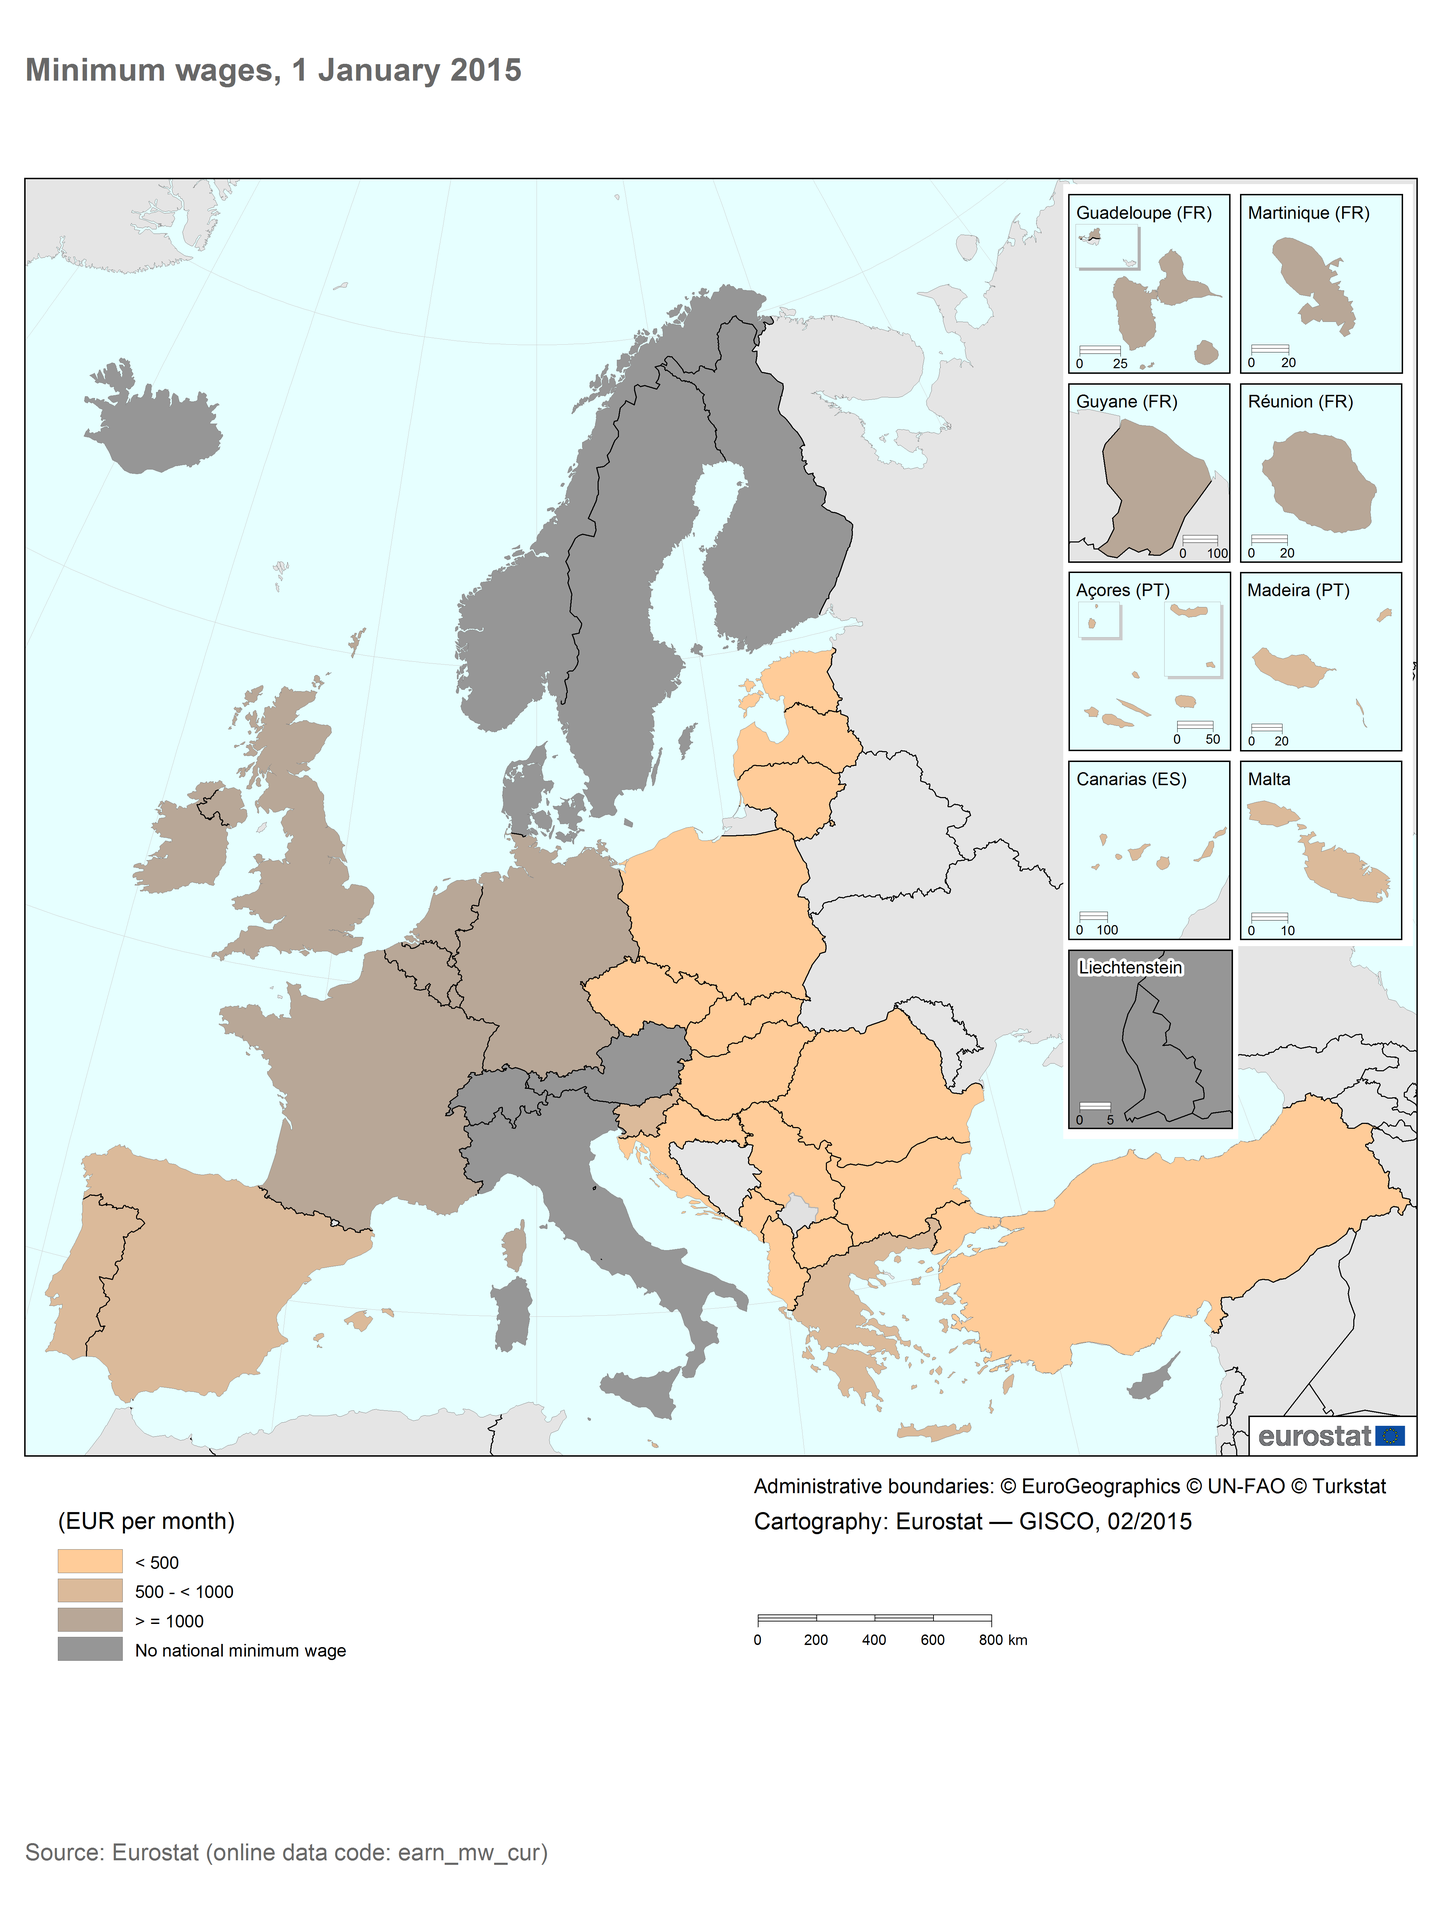 Miinimumpalk Euroopa Liidus